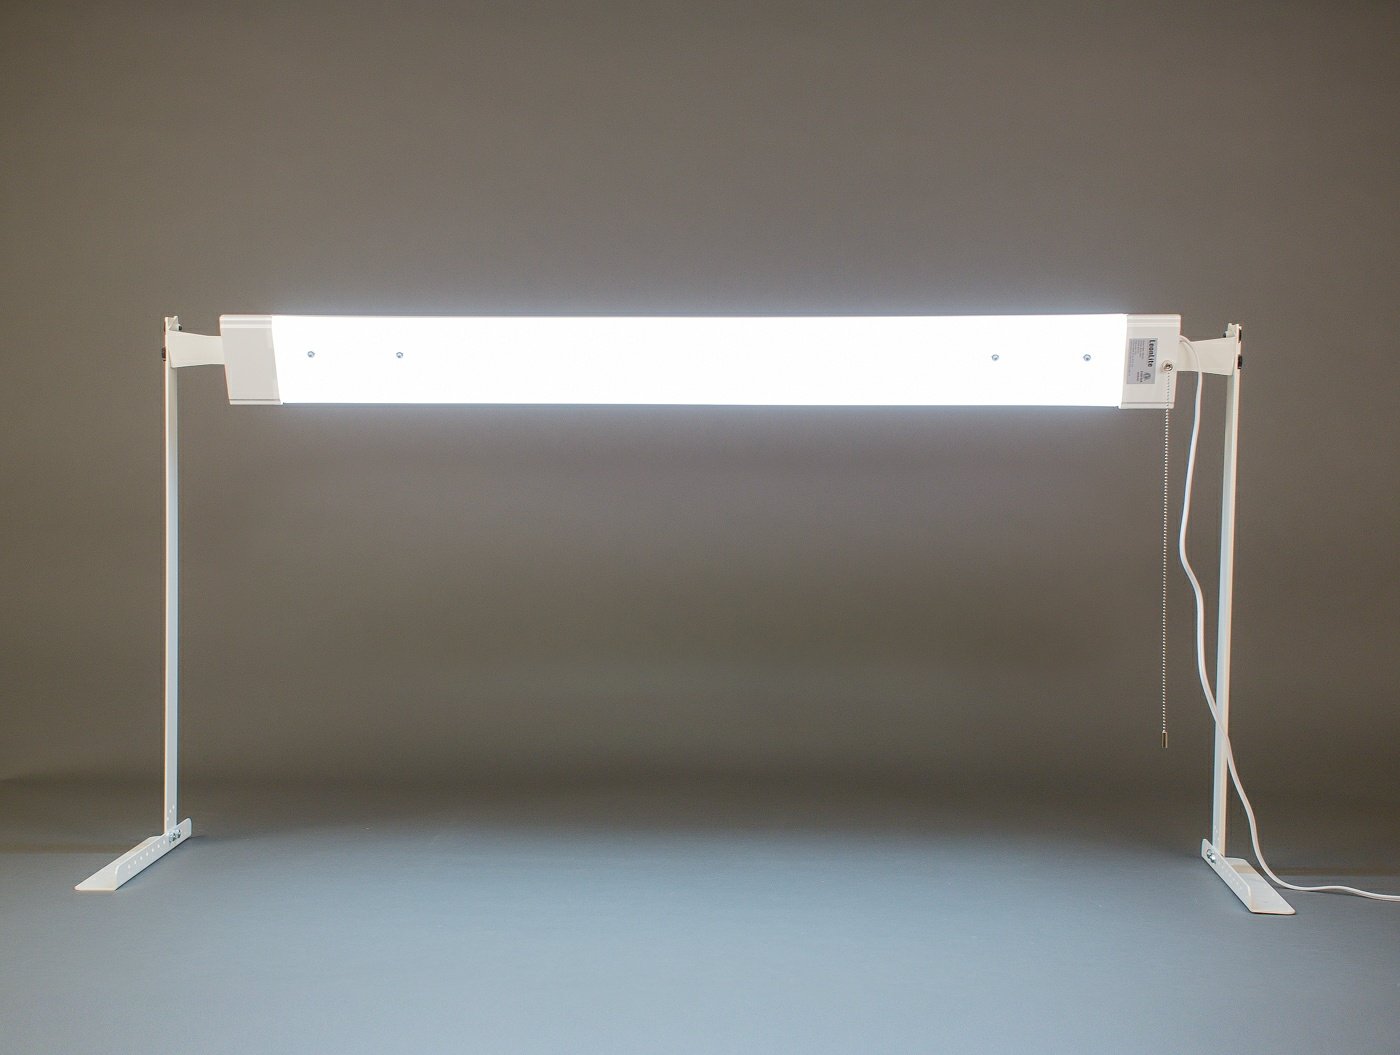 MyStudio® VS36LK LED Studio Lighting Kit with 48" 5000K LED Light for Product Photography